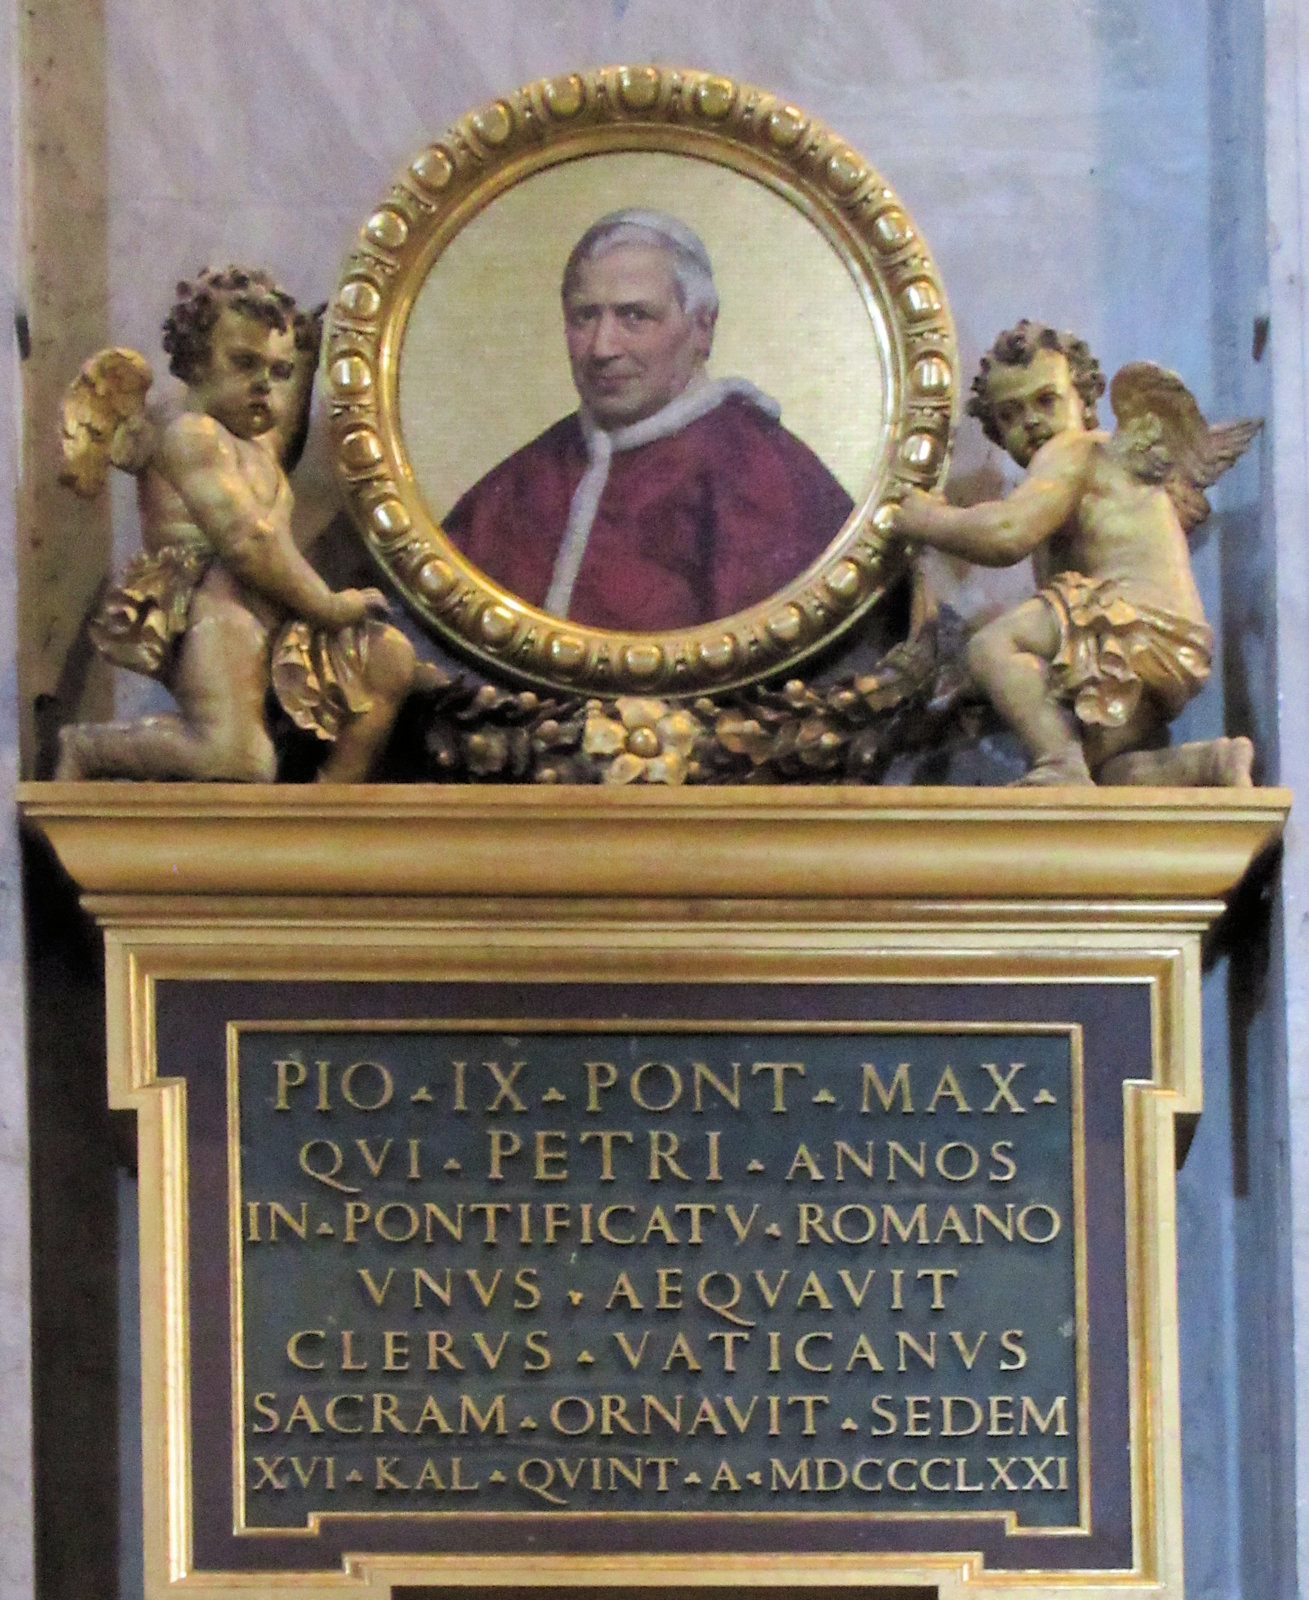 Gedenktafel zum 25-jährigen Amtsjubiläum - der überlieferten Amtszeit von Petrus -, angebracht über der Petrus-Statue im Petersdom in Rom. Pius regierte dann noch weitere sieben Jahre.